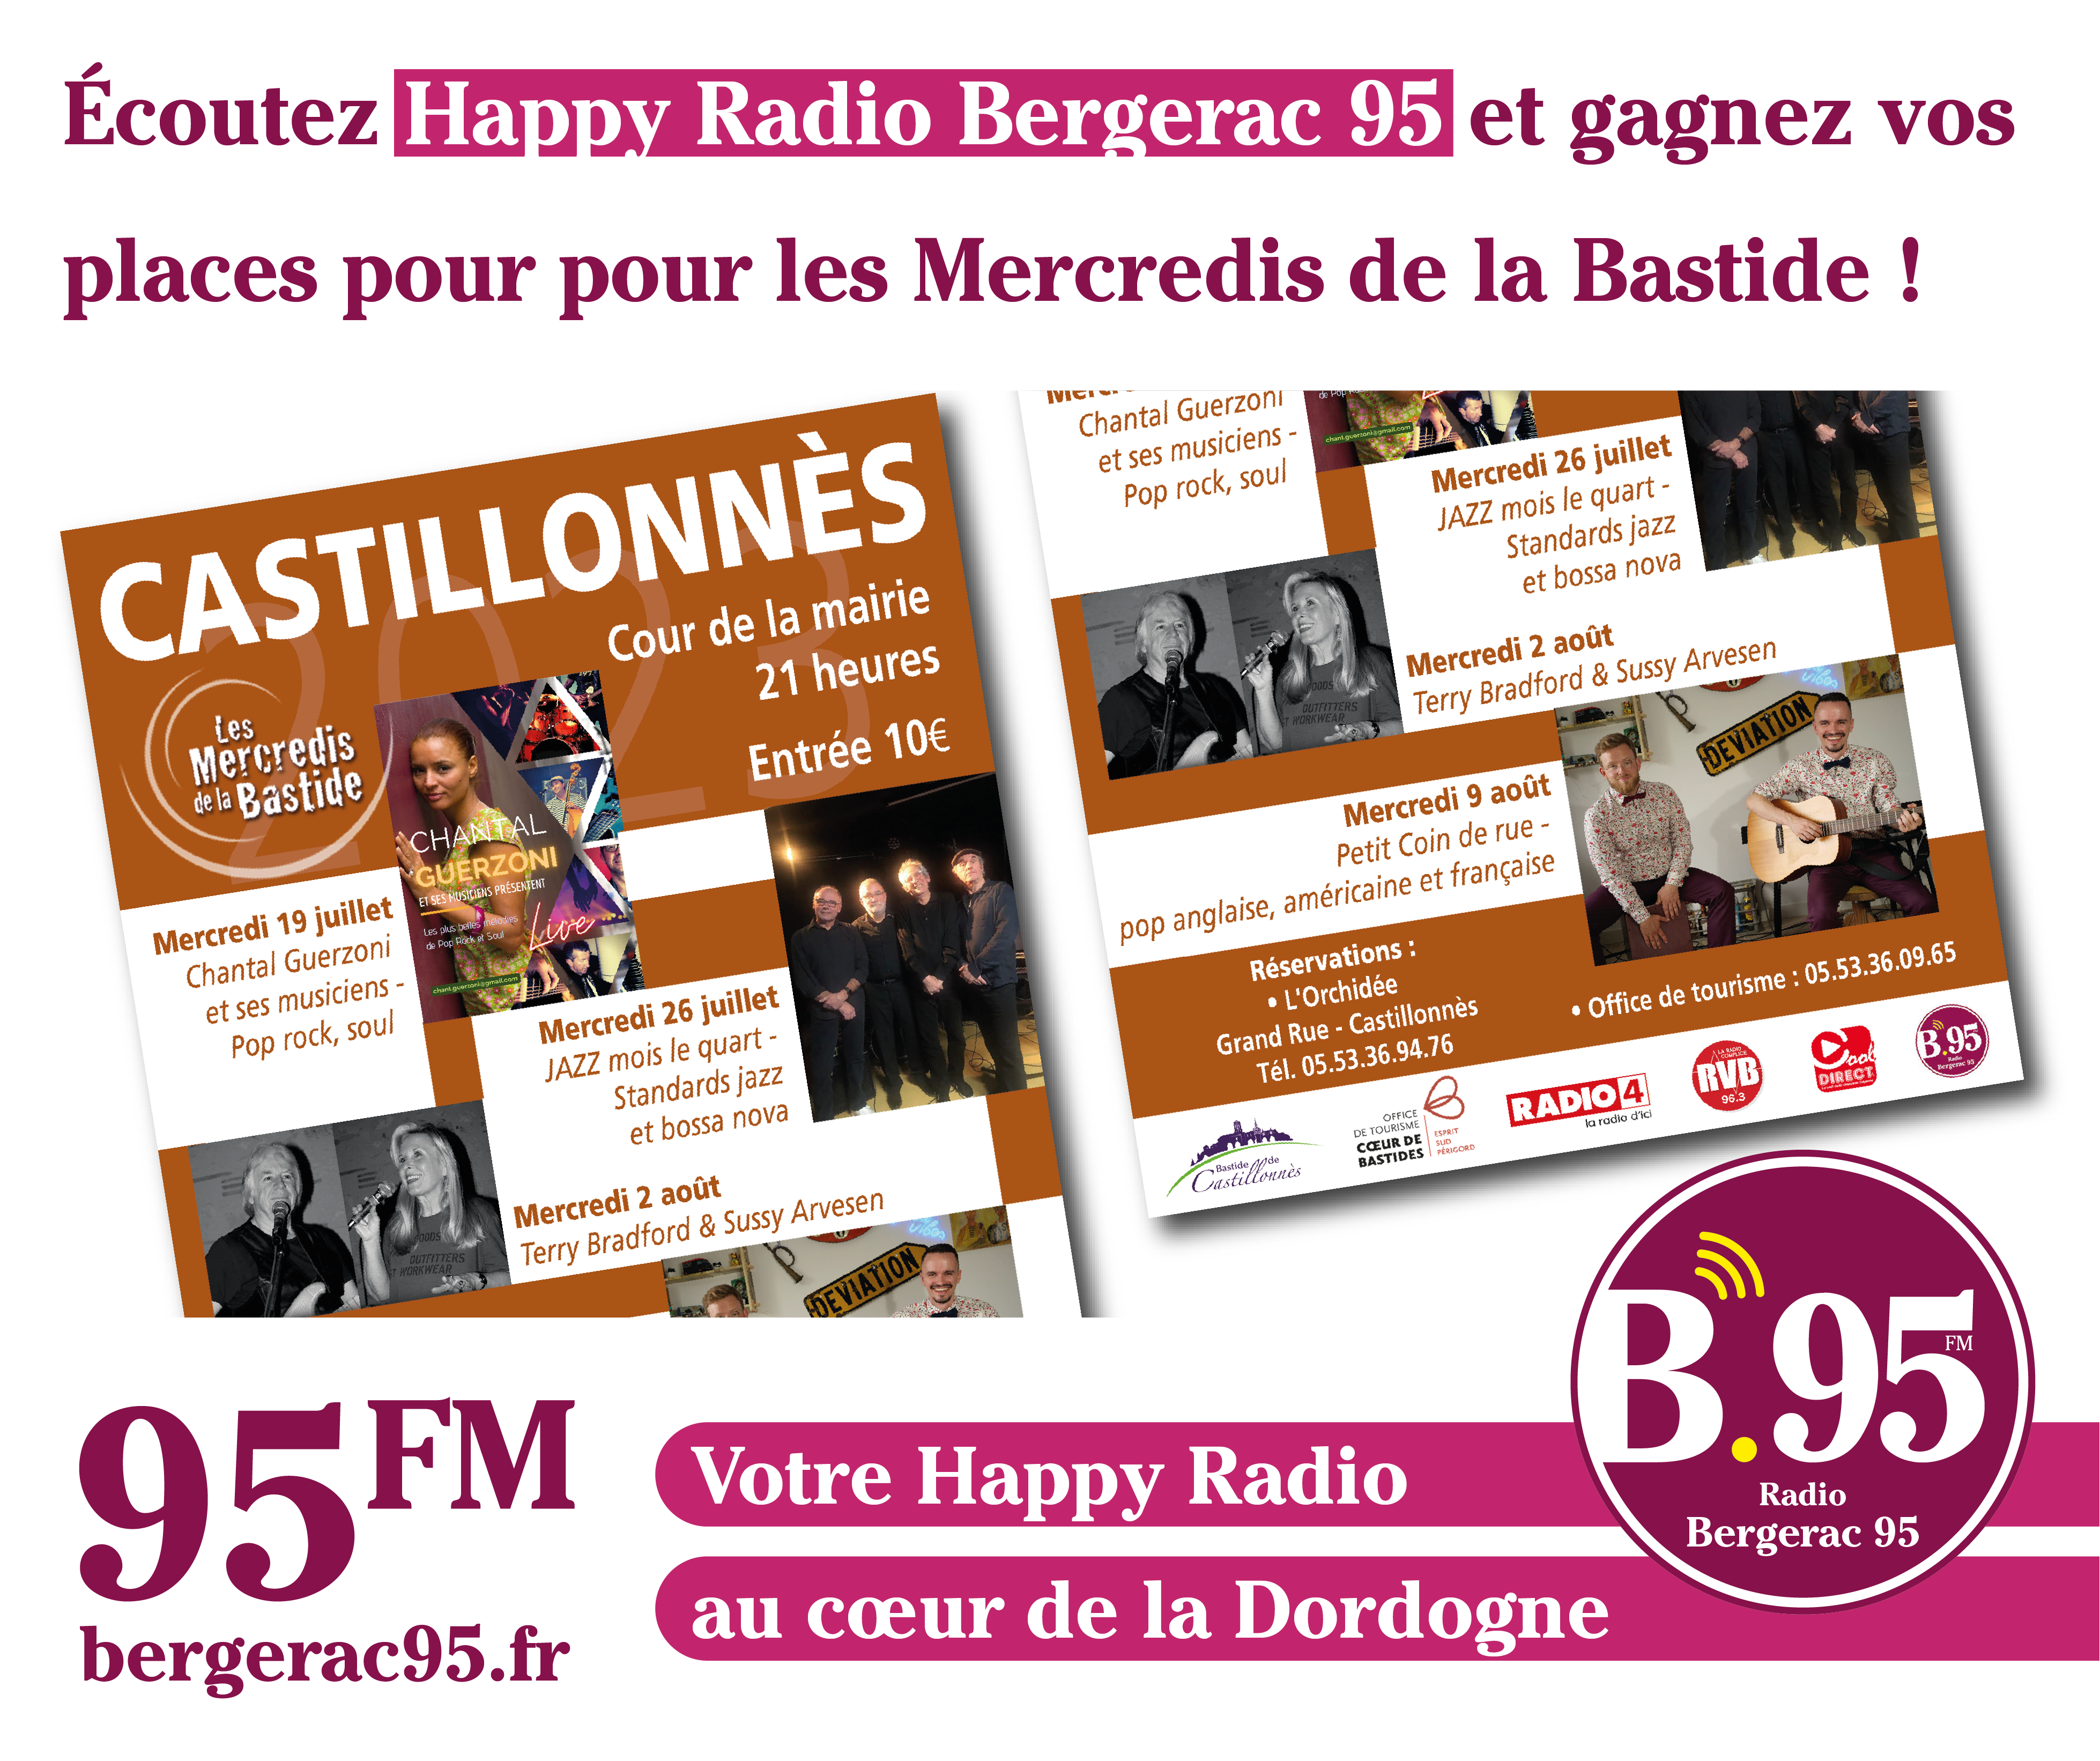 You are currently viewing Écoutez Happy Radio Bergerac 95 et gagnez vos places pour pour les Mercredis de la Bastide !